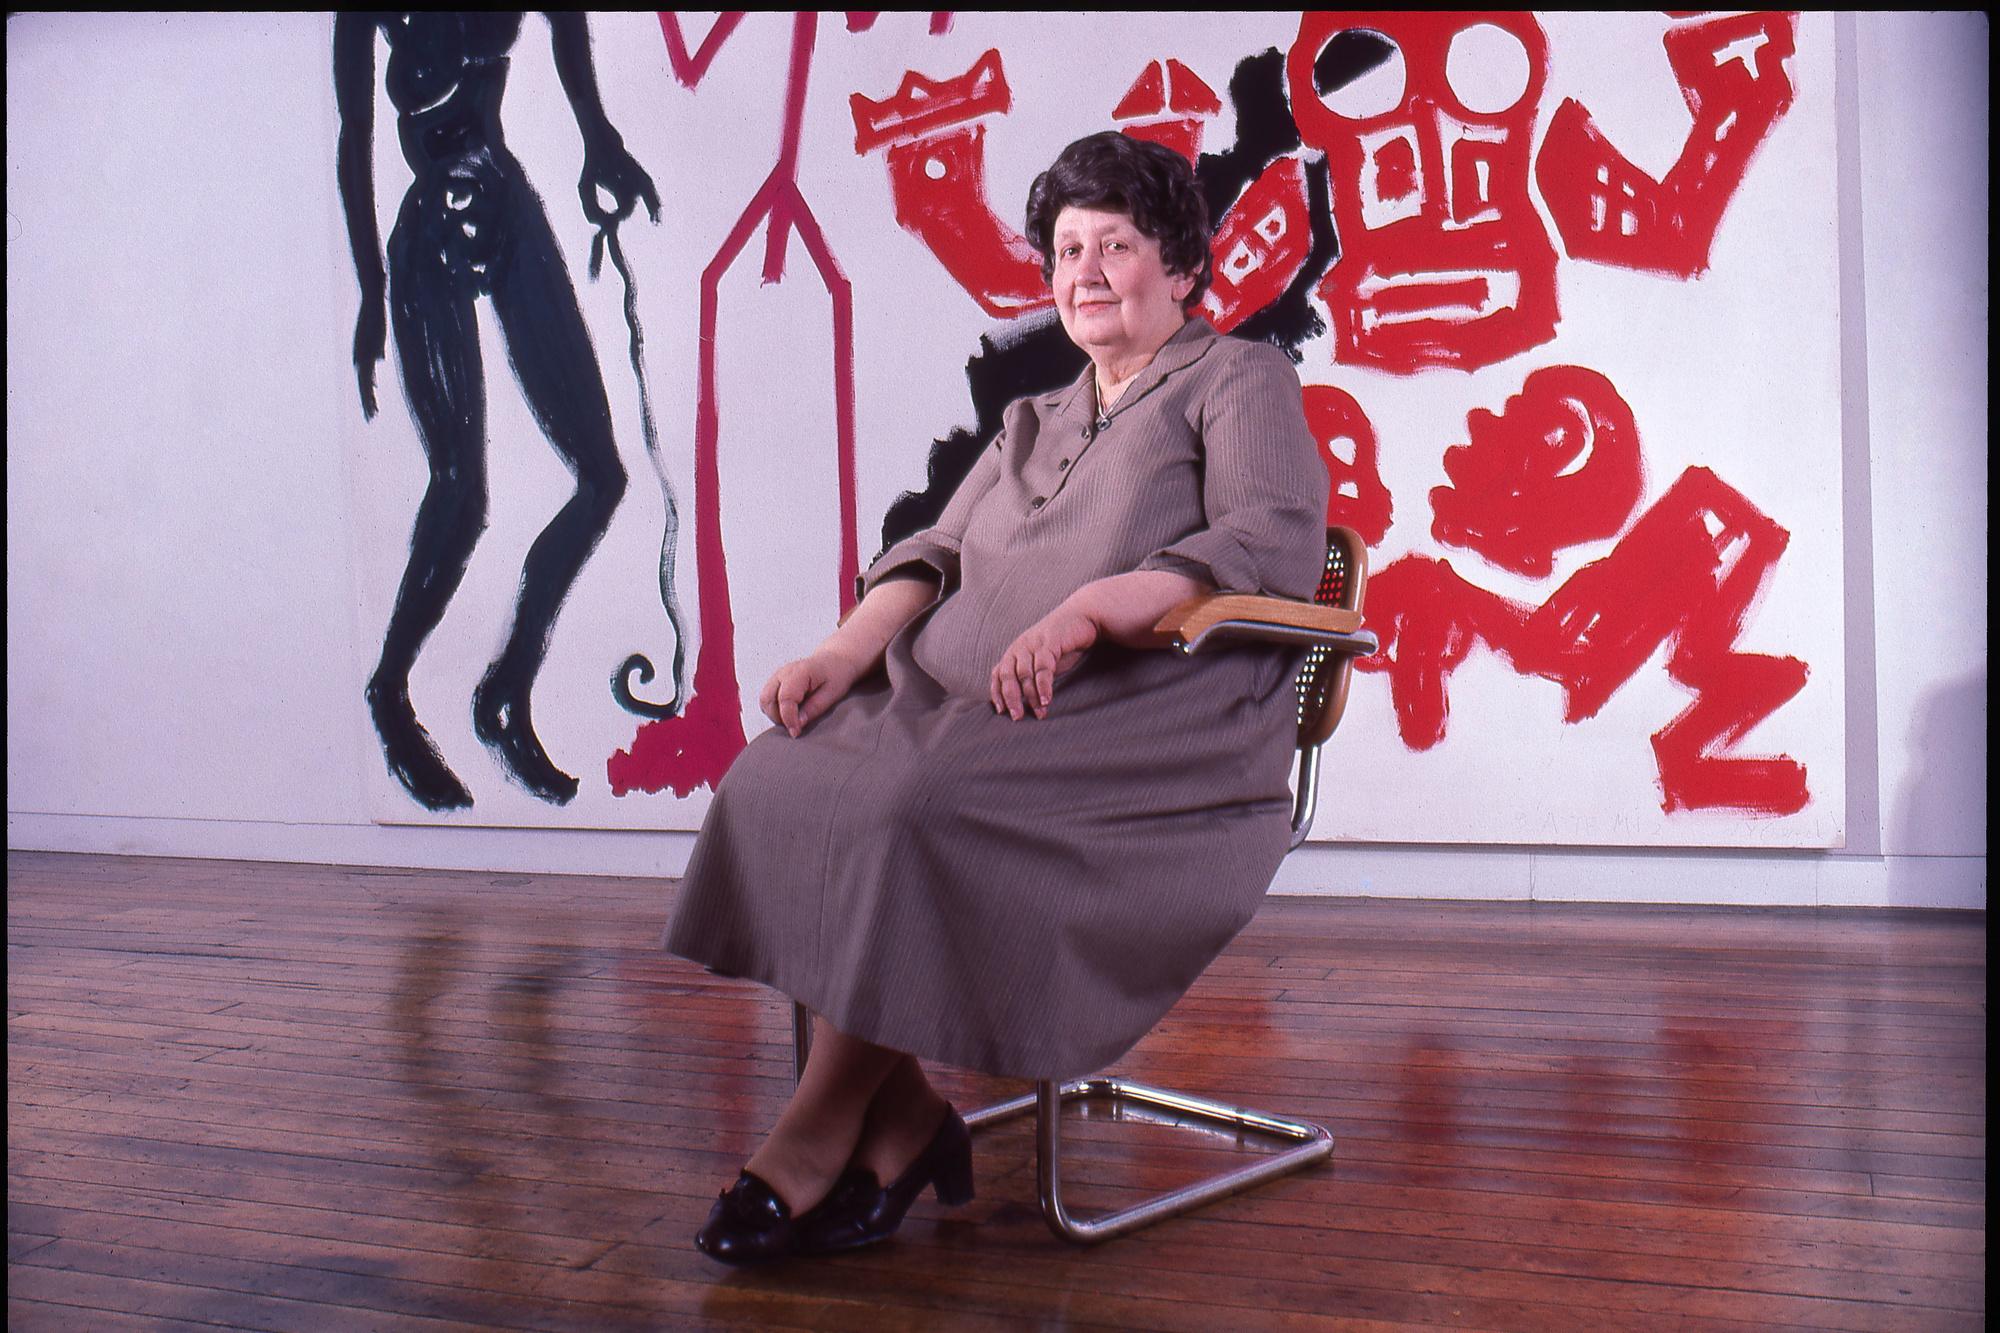 De Roemeens-Amerikaanse kunsthandelaarster Ileana Sonnabend in haar galerij in Soho in 1982.